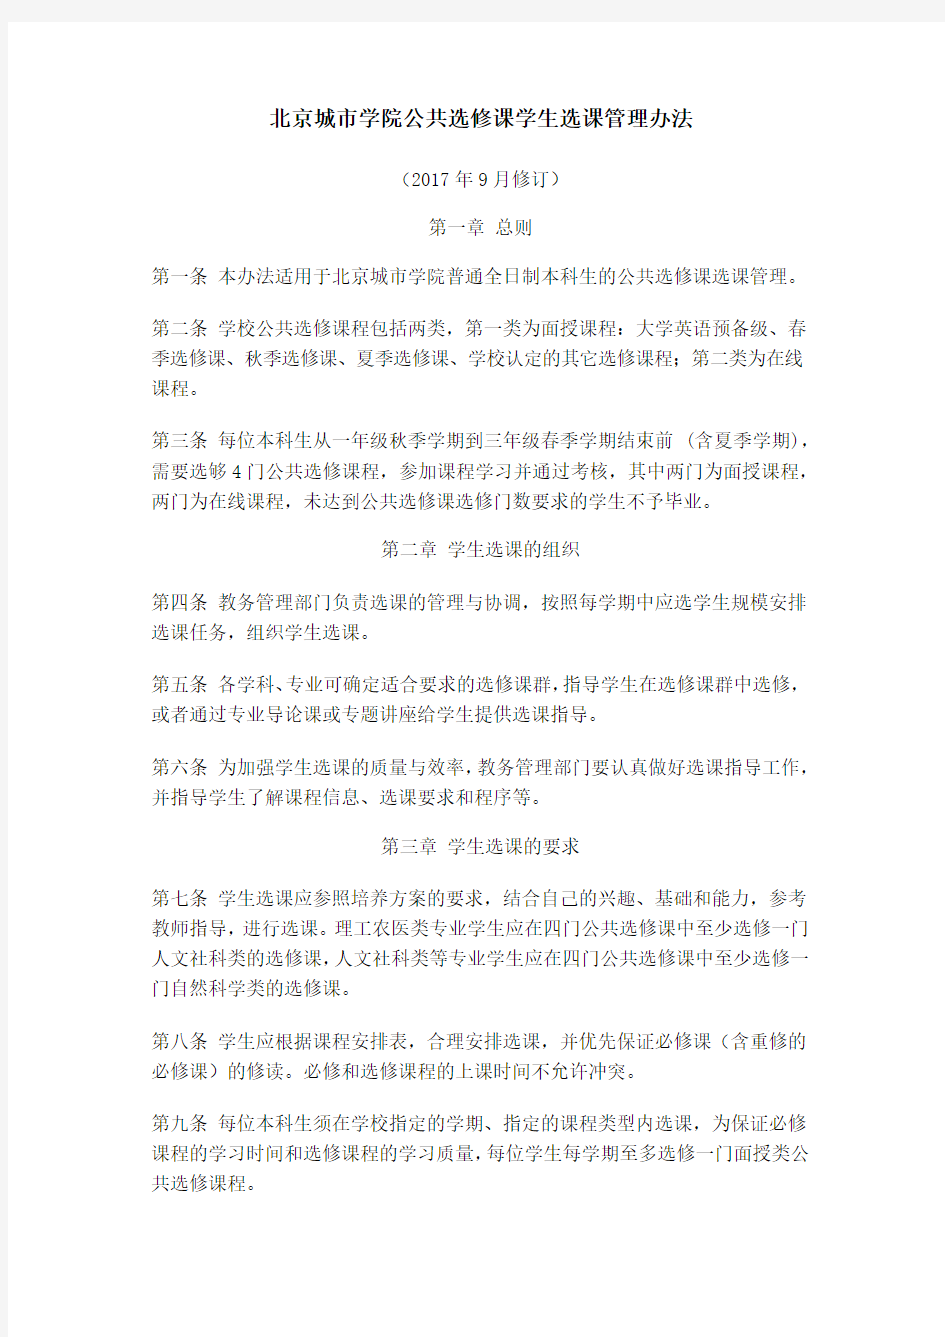 北京城市学院公共选修课学生选课管理办法(2017.9修订)